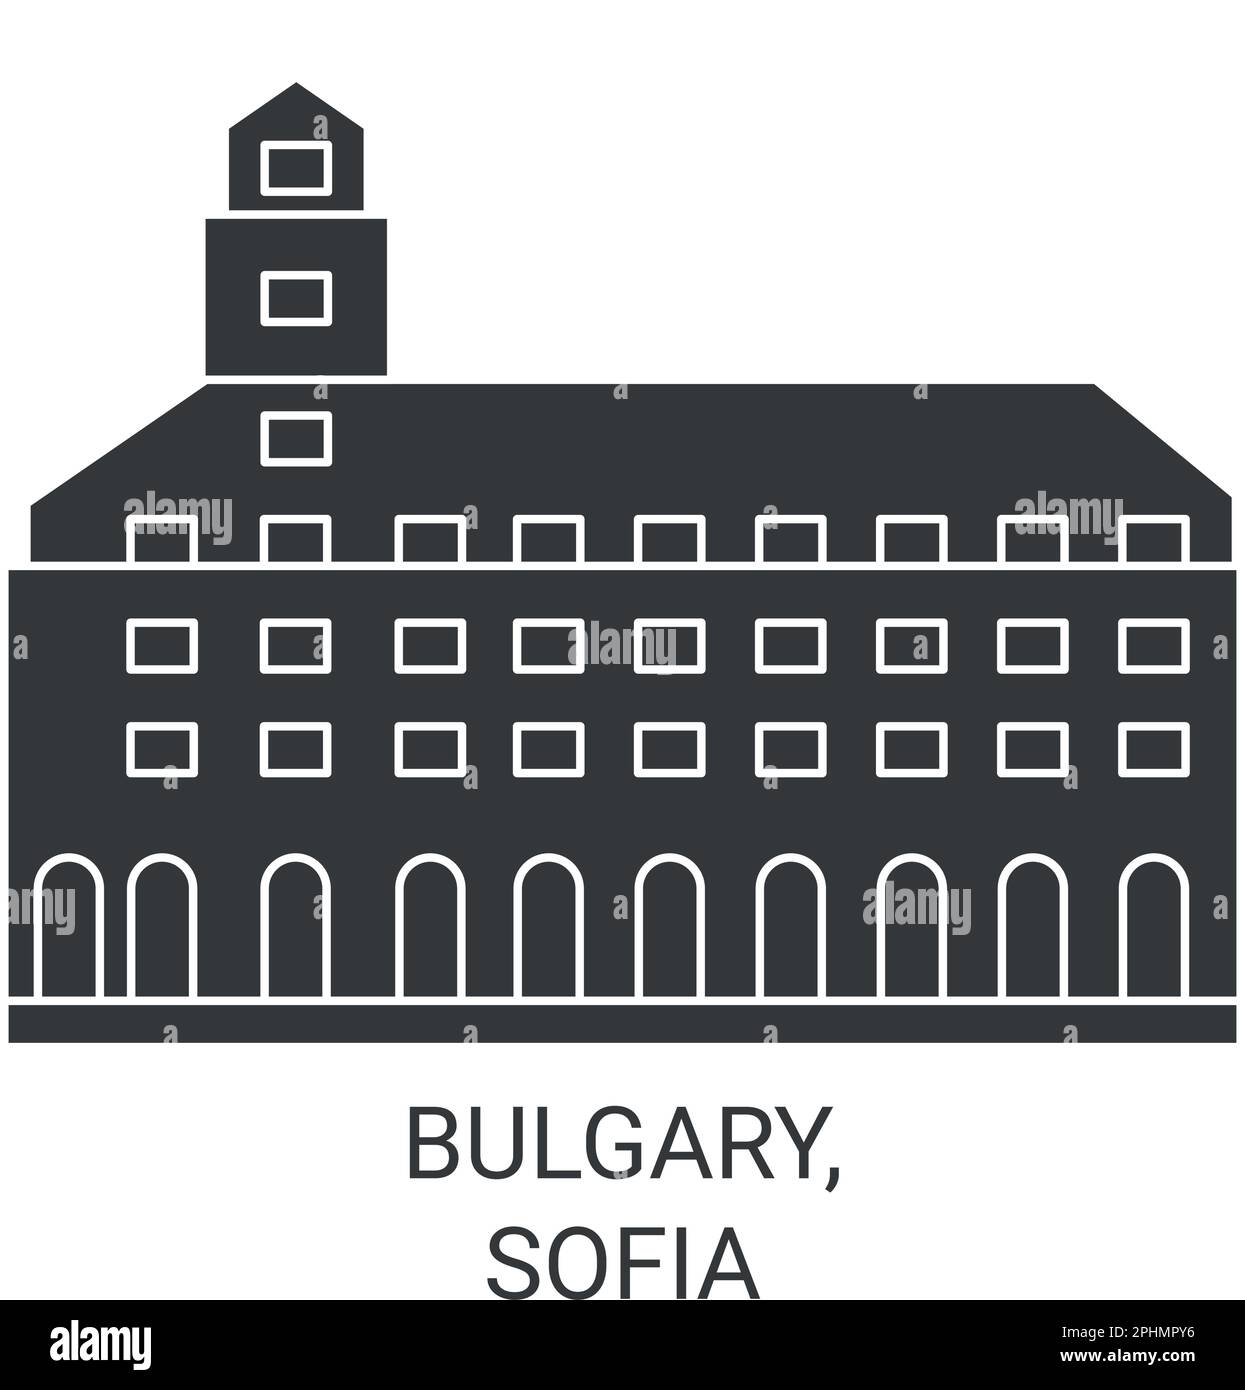 Bullary, Sofia voyage repère illustration vecteur Illustration de Vecteur